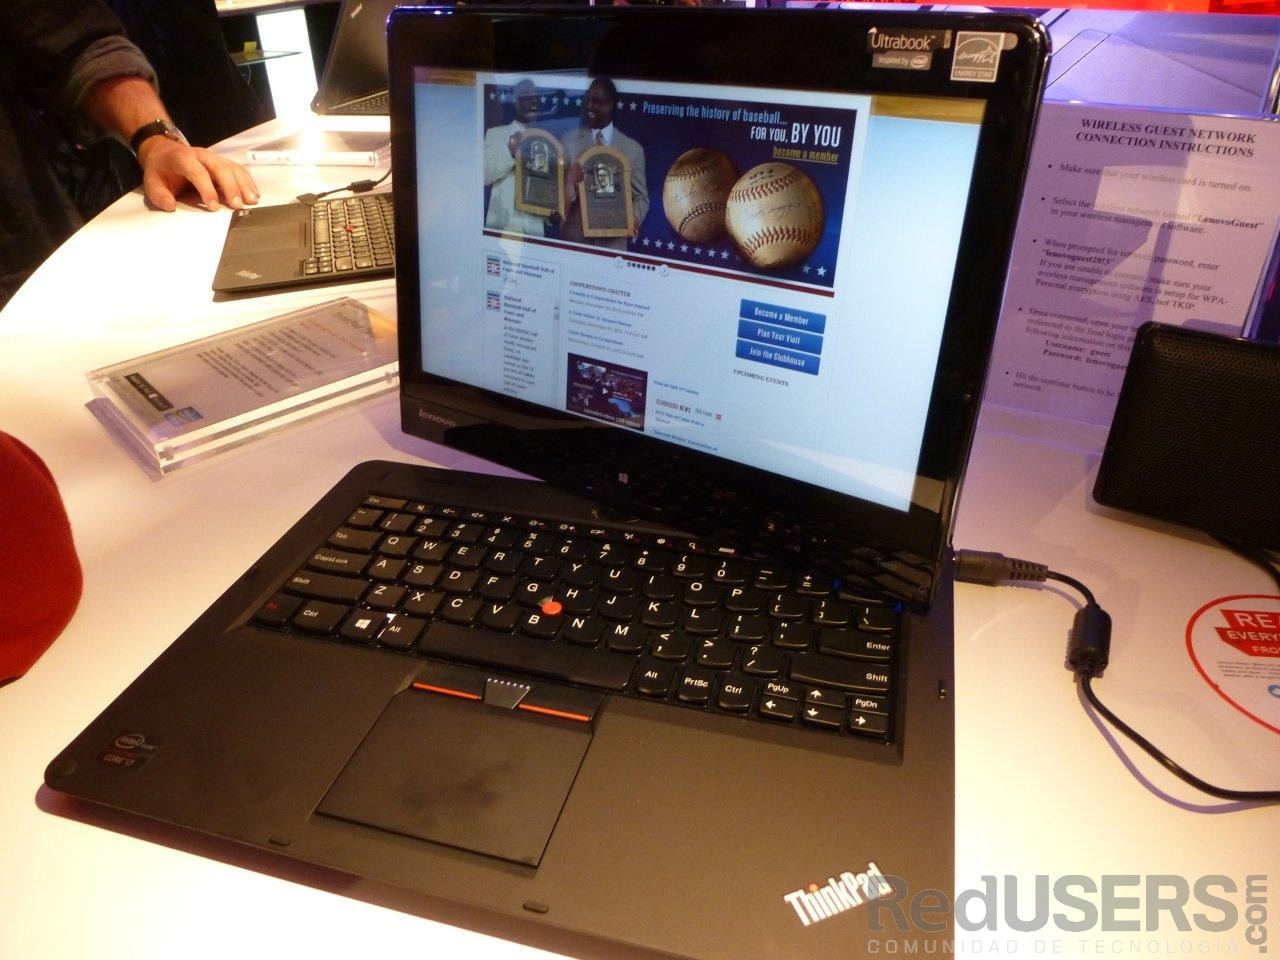 La famosa línea ThinkPad también mostró nuevos modelos en la CES 2013